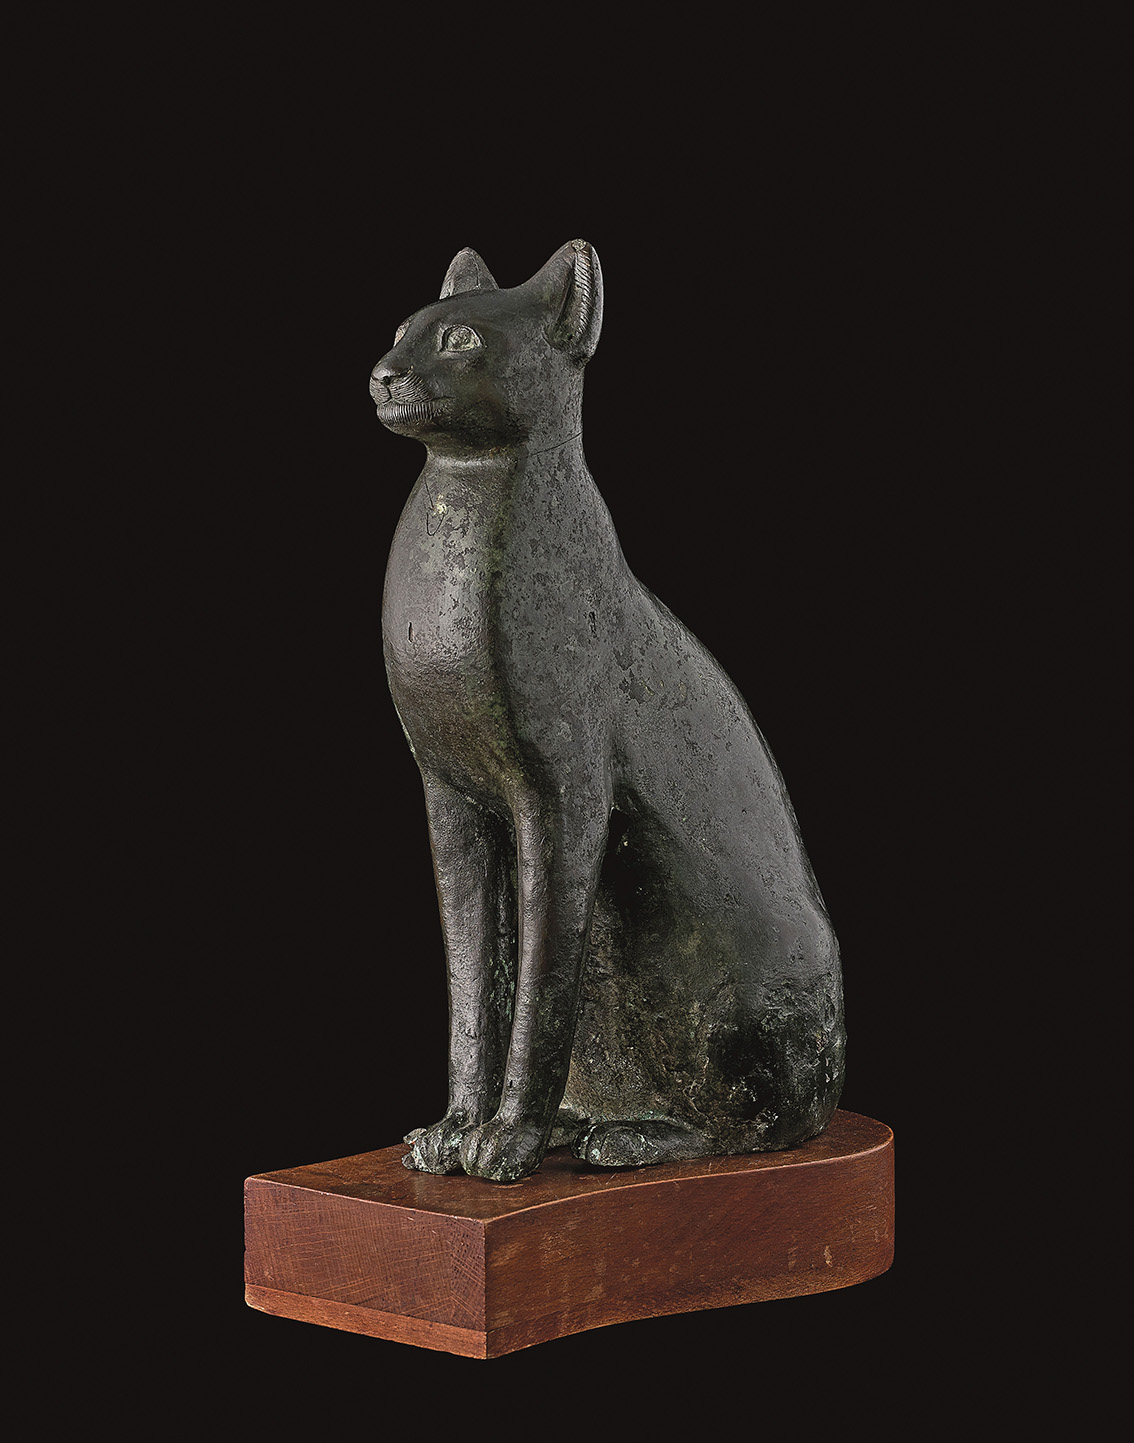 White Glove Treatment for Egyptian Feline in Bronze